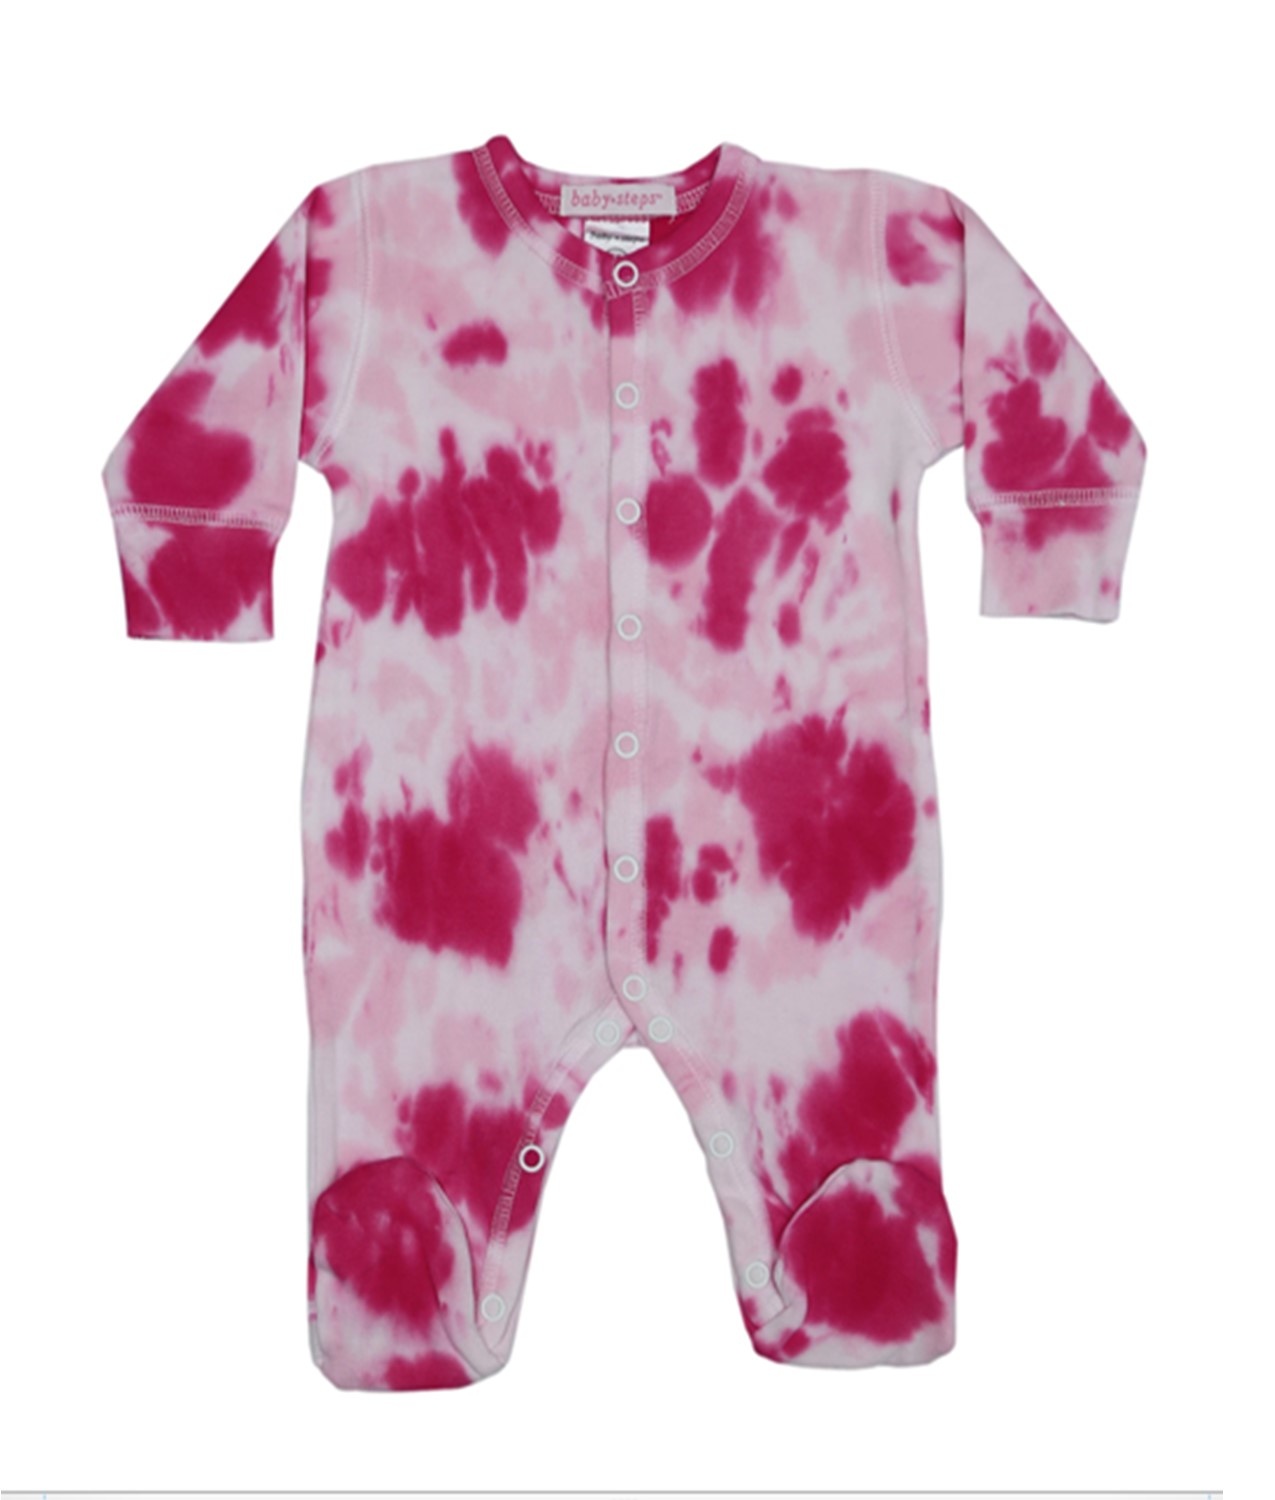 Baby Steps Hot Pink Tie Dye Footie